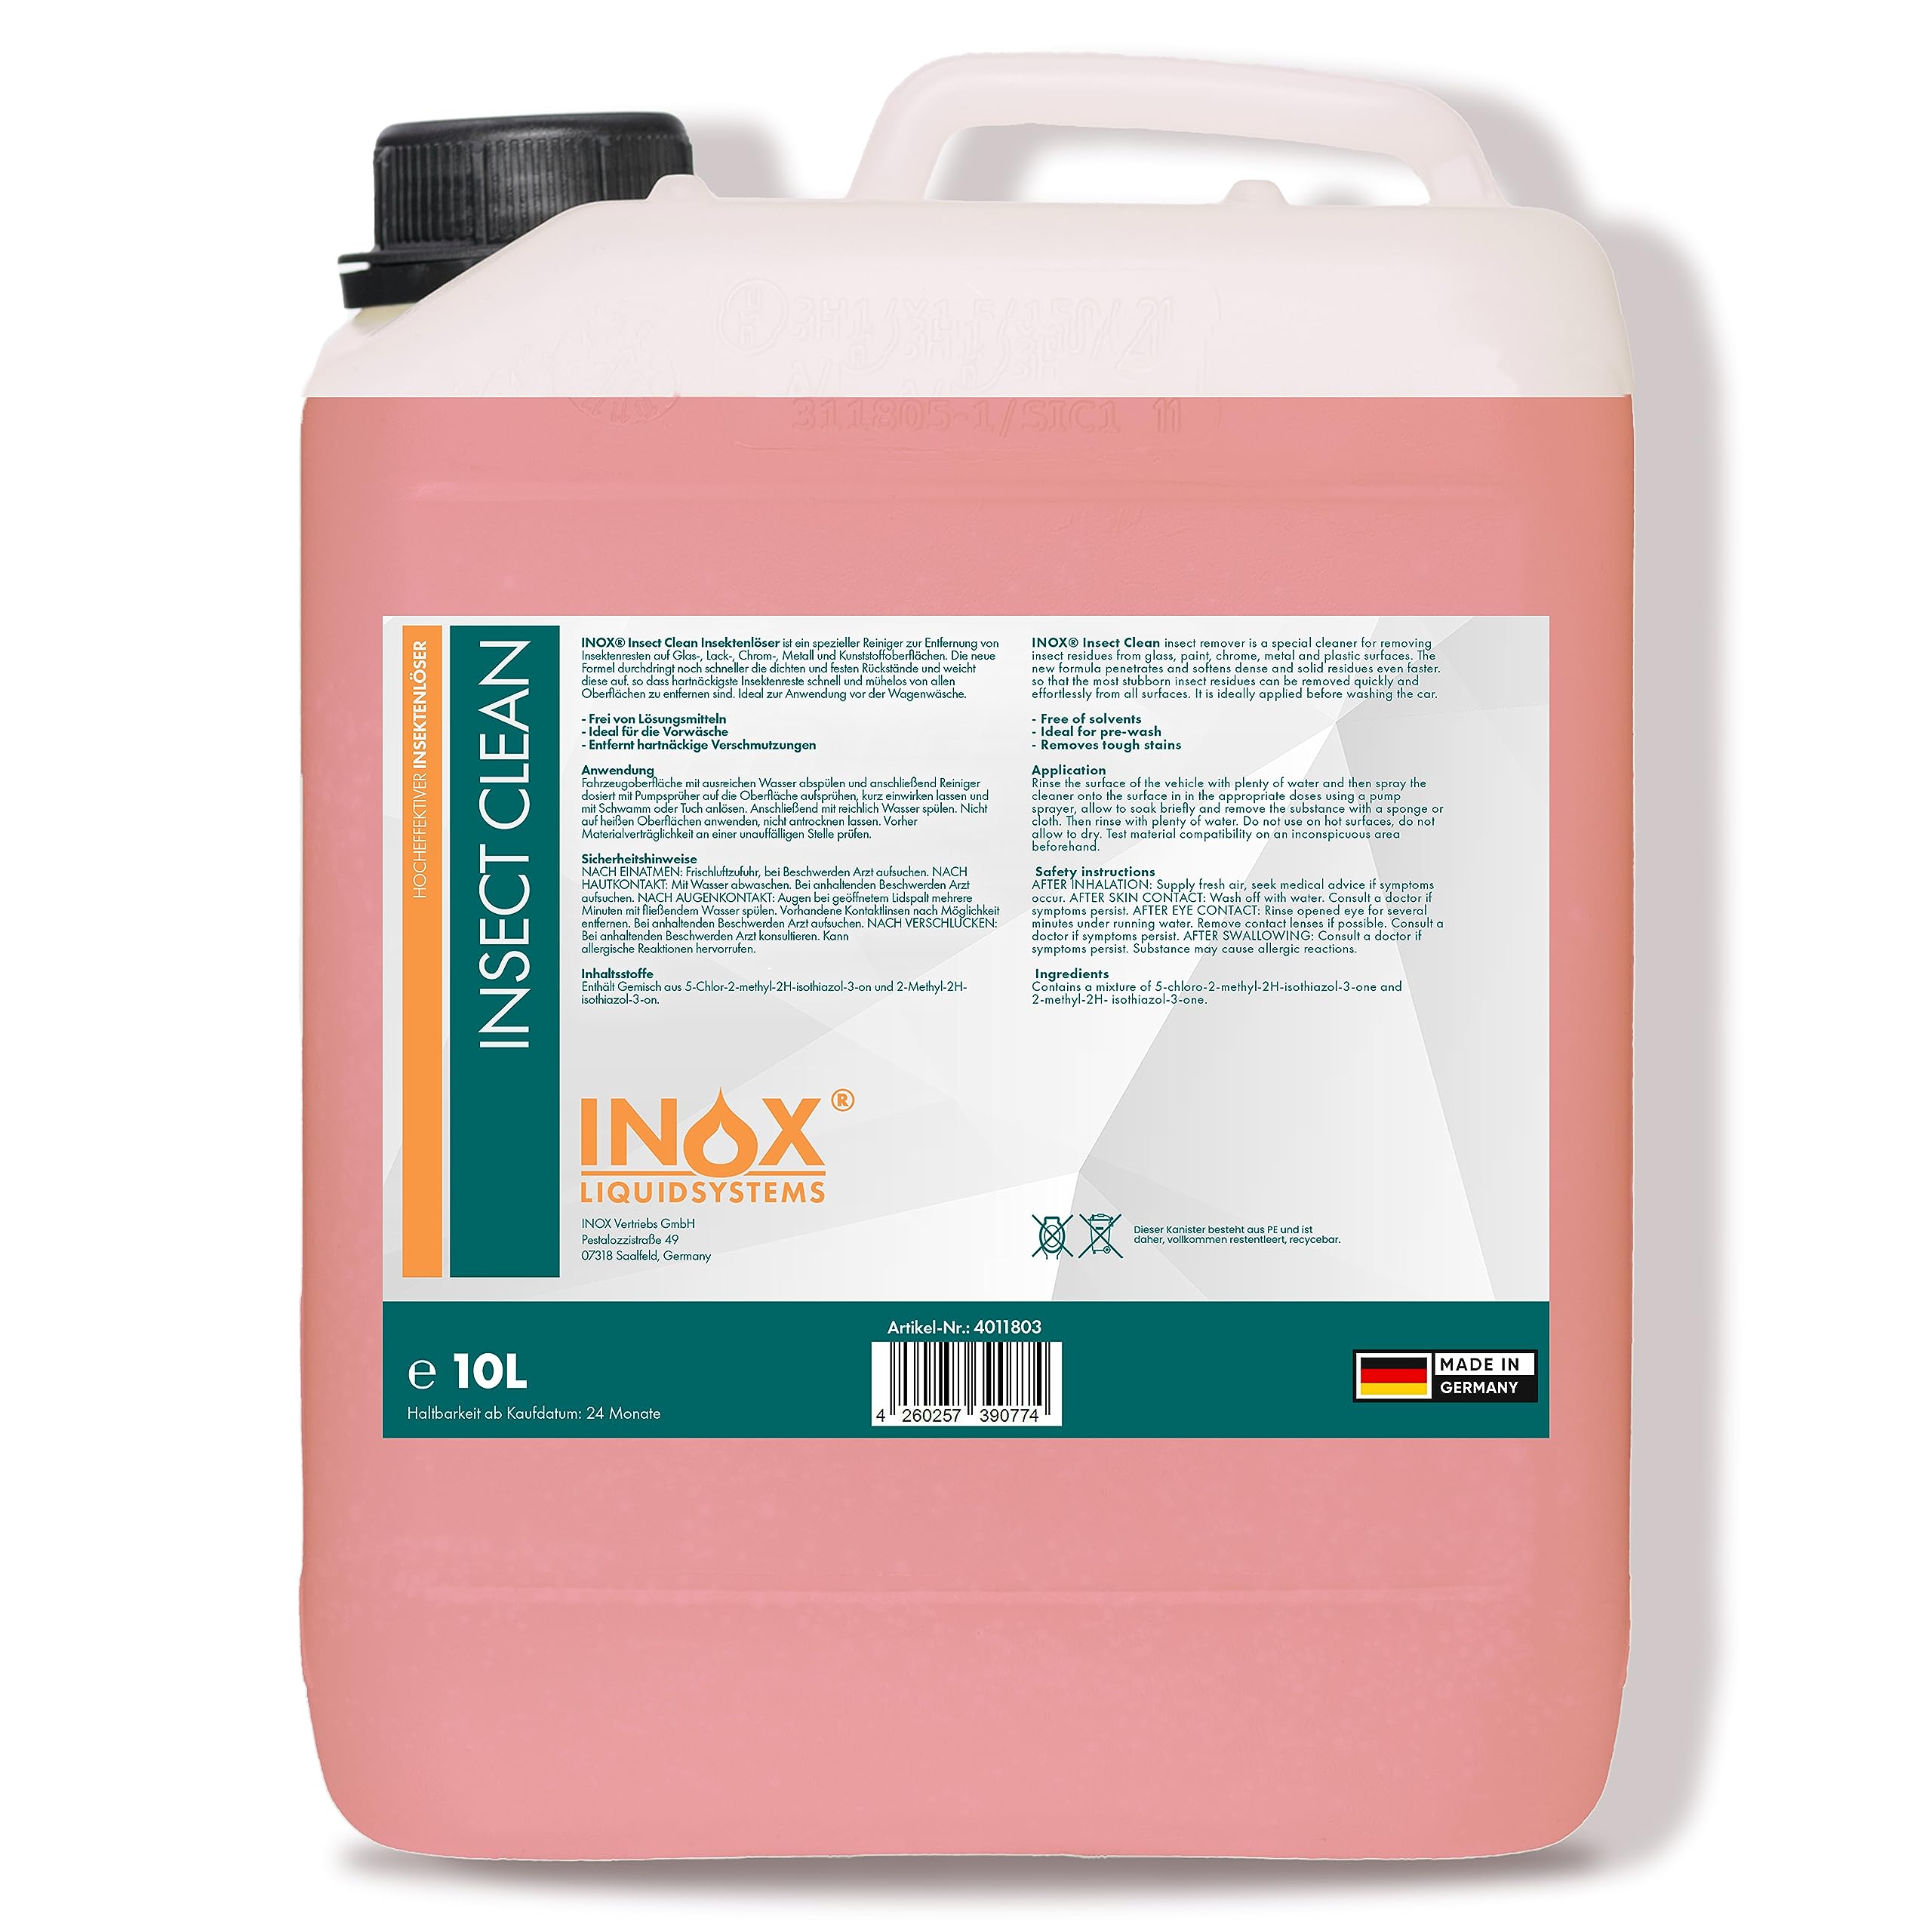 INOX - Hocheffektiver Insektenreiniger Auto 10L | KFZ-Insektenentferner sehr Lack schonend | Insektenlöser für Lack, Glas, Kunststoff & Chrom geeignet